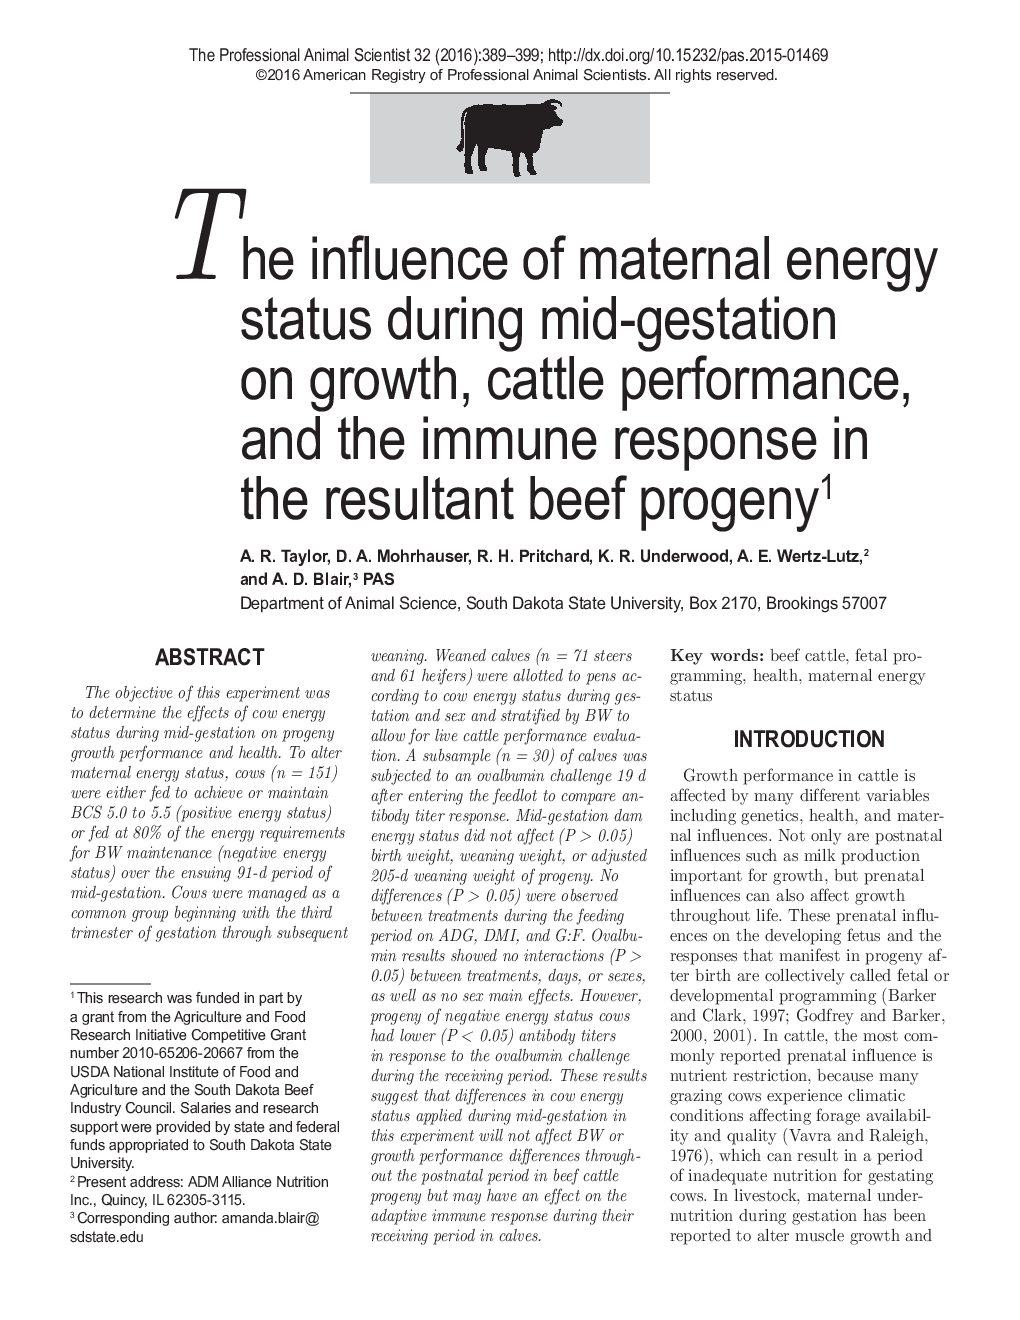 تأثیر وضعیت انرژی مادر در اواسط بارداری بر رشد، عملکرد گاو و پاسخ ایمنی در پروسه تولید گوشت گاو 